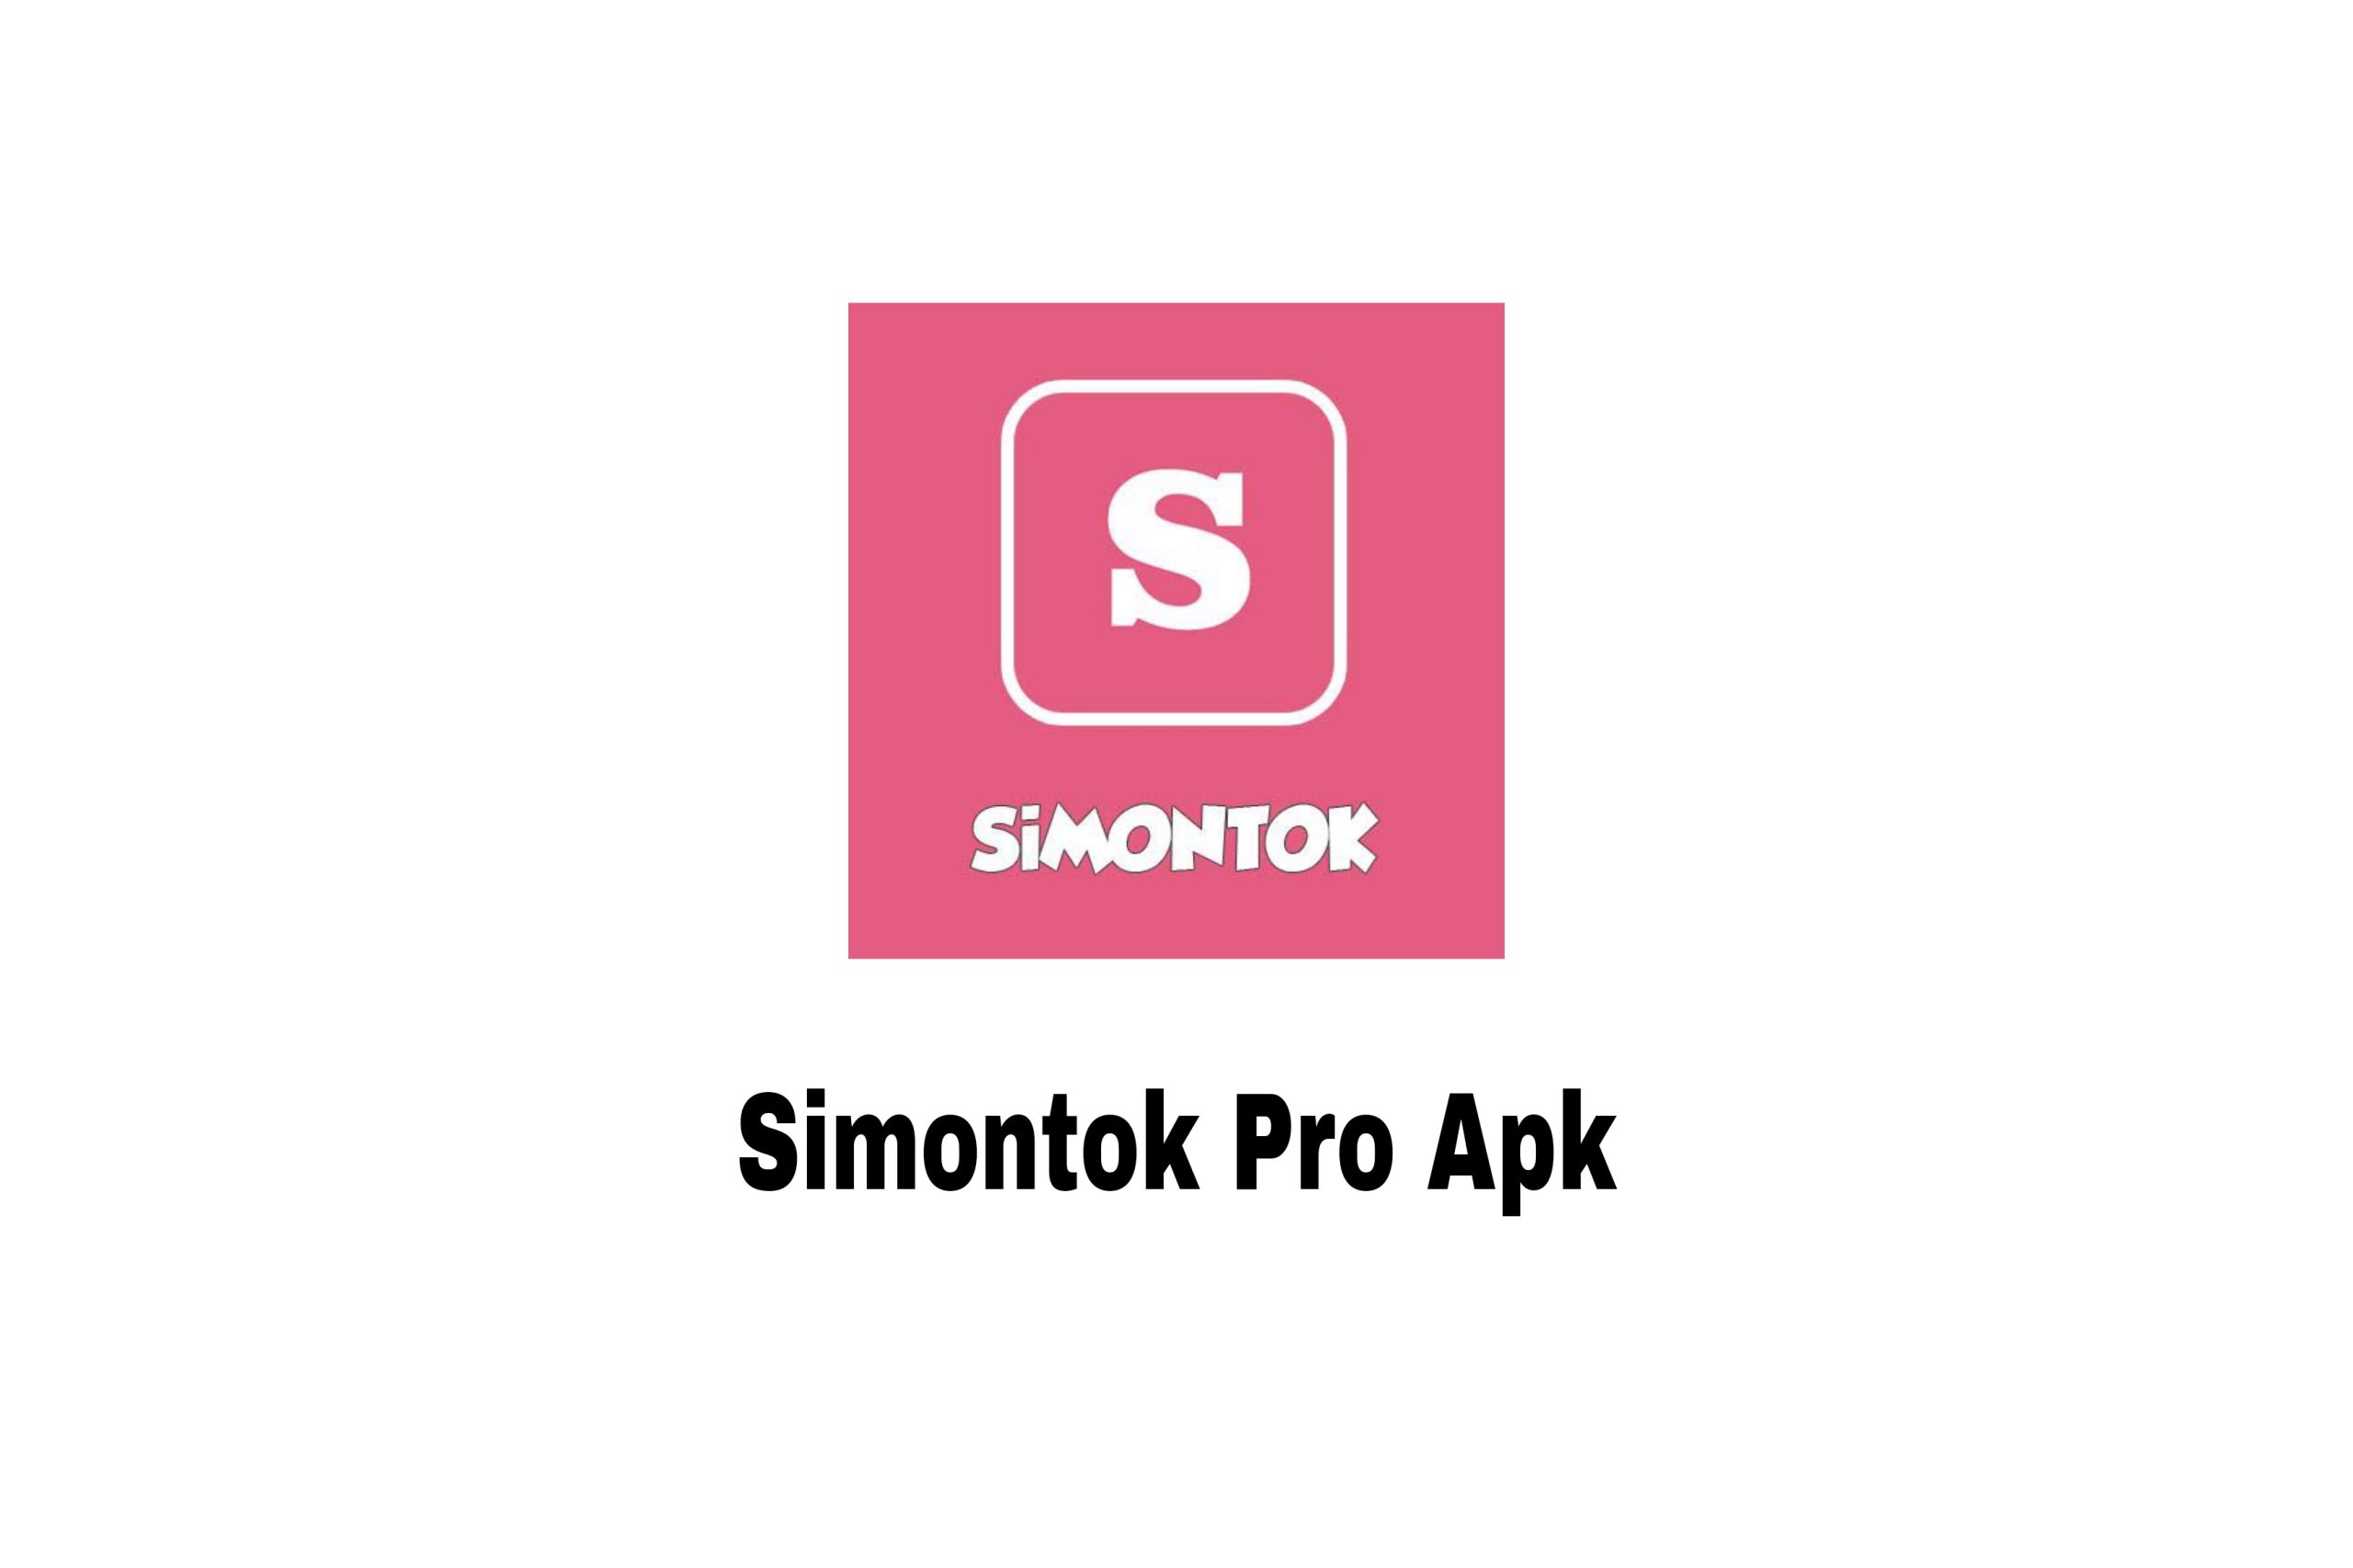 Simontok Pro Apk